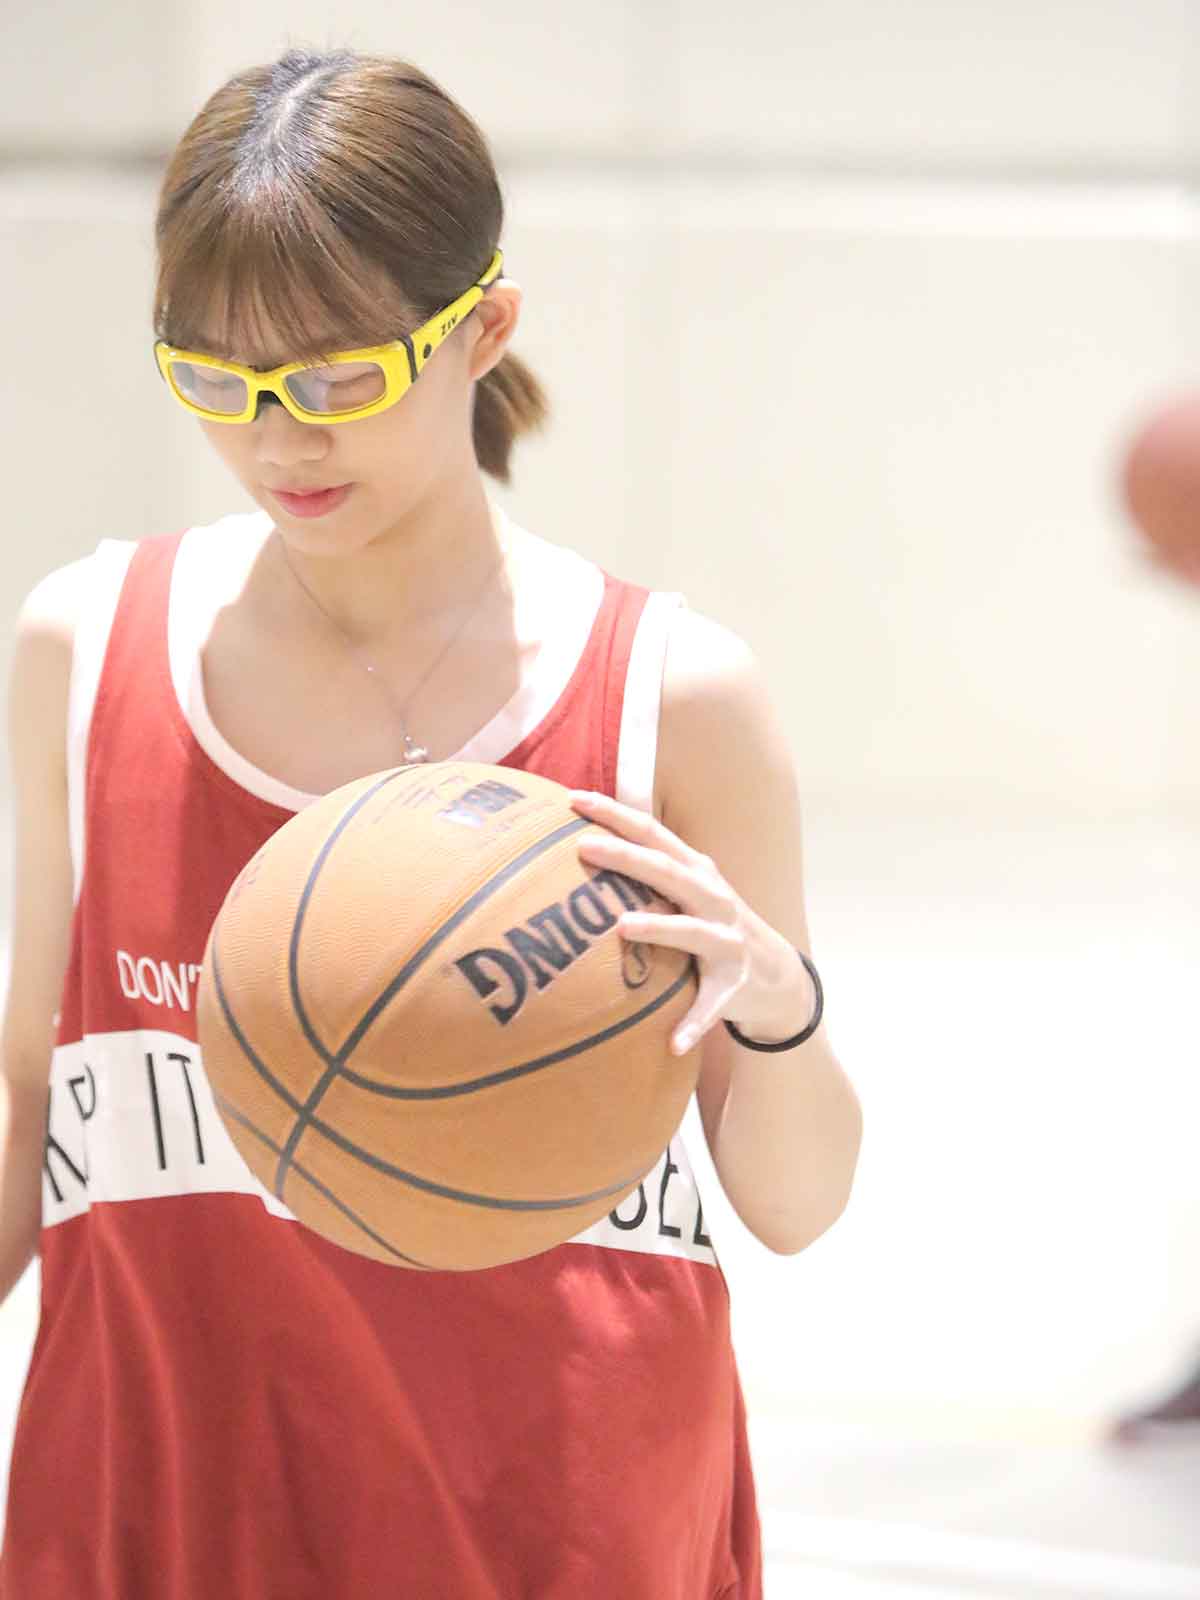 配戴ZIV近視運動安全眼鏡打籃球